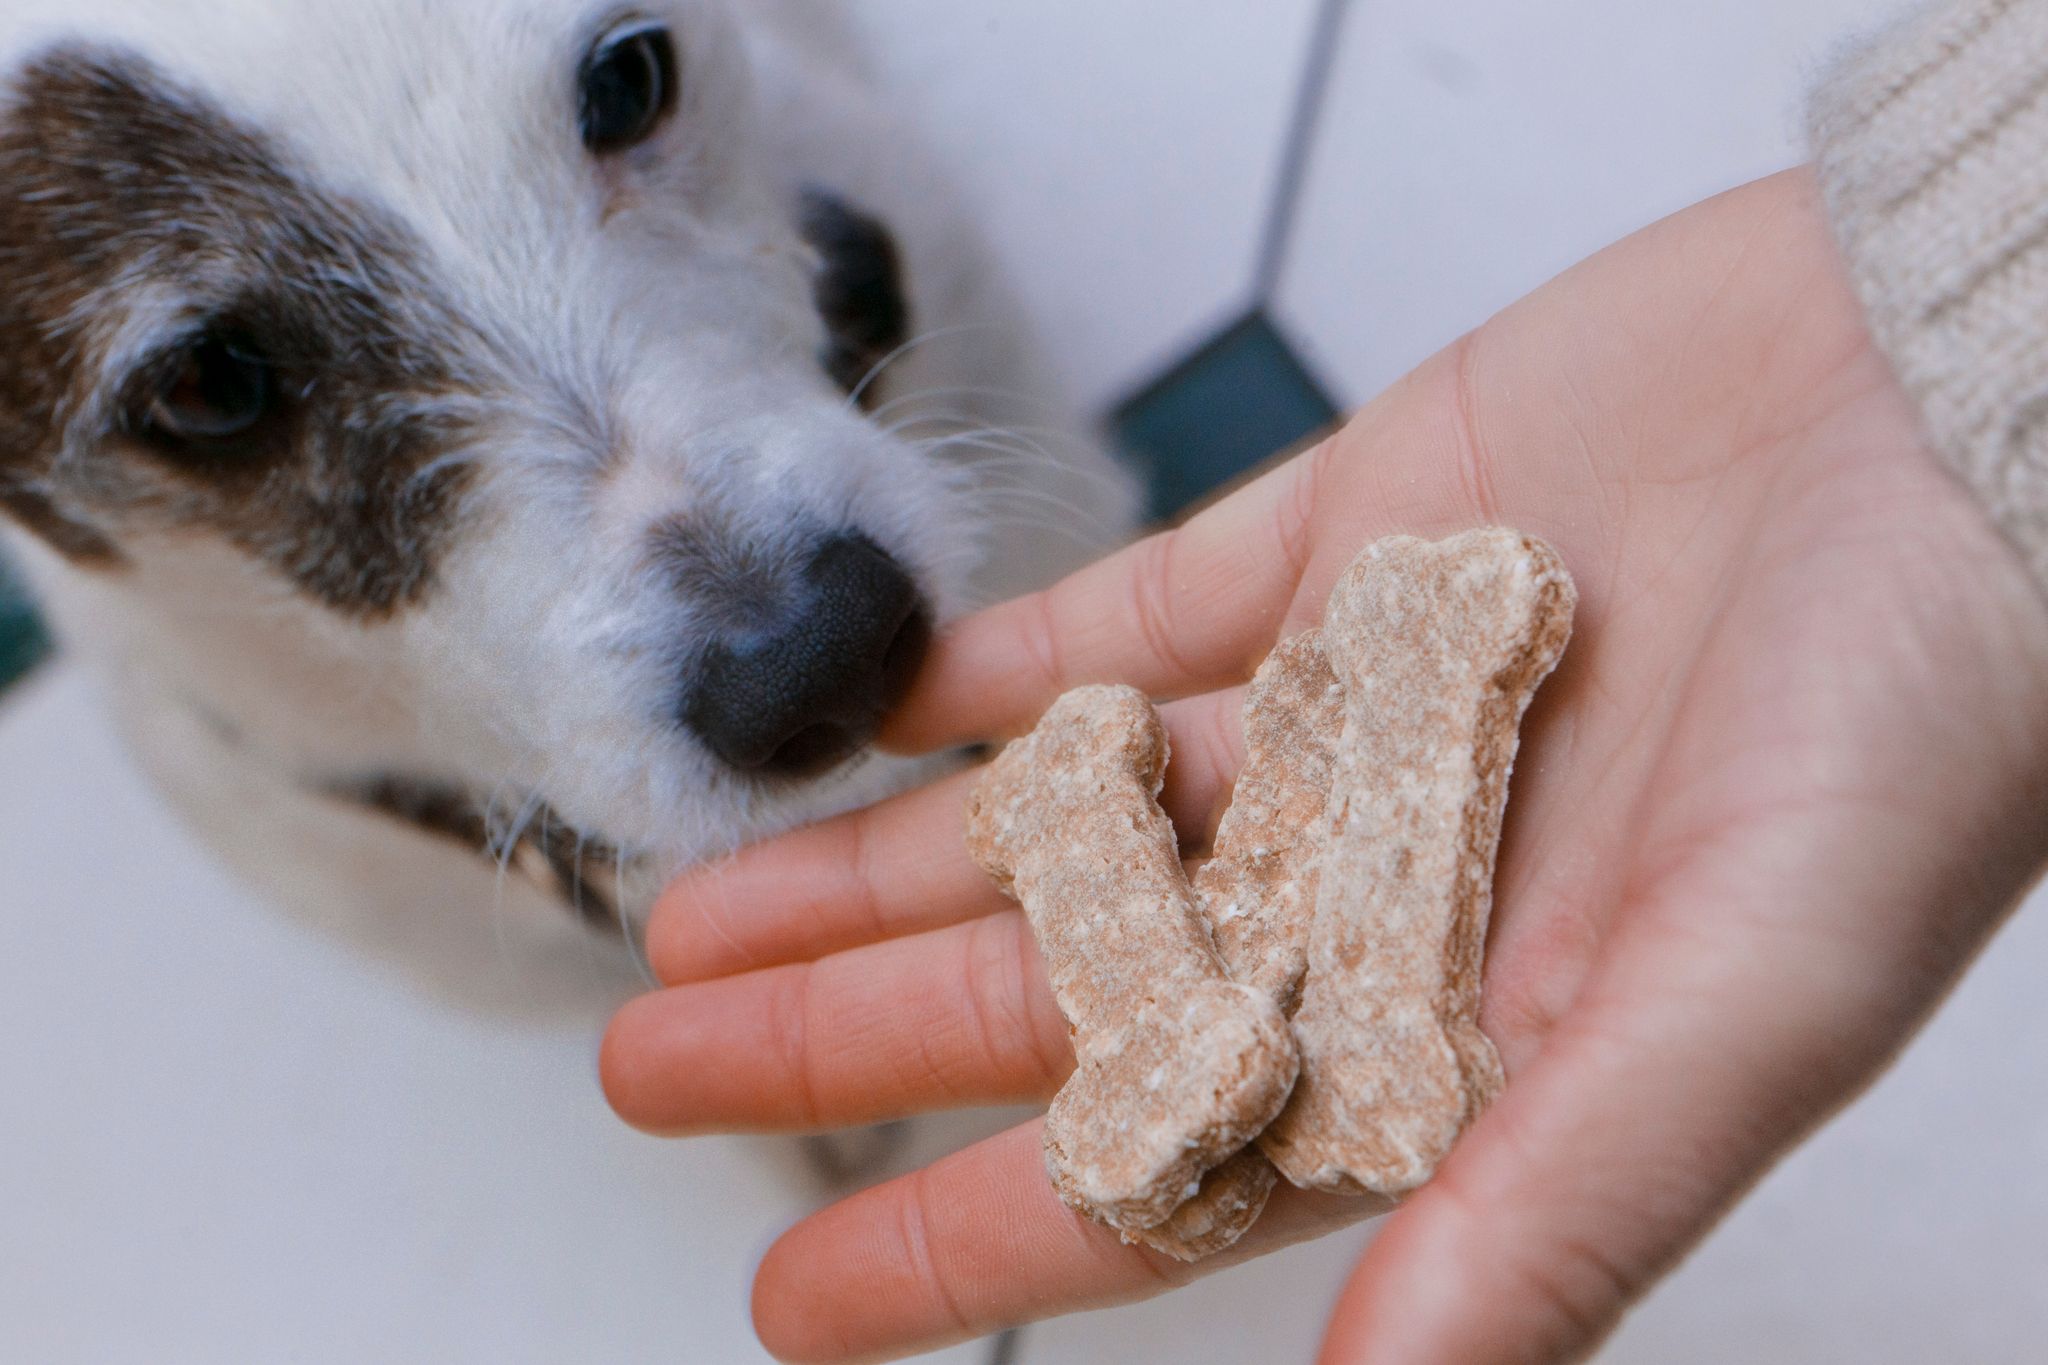 La mayoría de los propietarios desconoce las pautas sobre el manejo seguro de alimentos para mascotas (Markus Scholz/dpa=